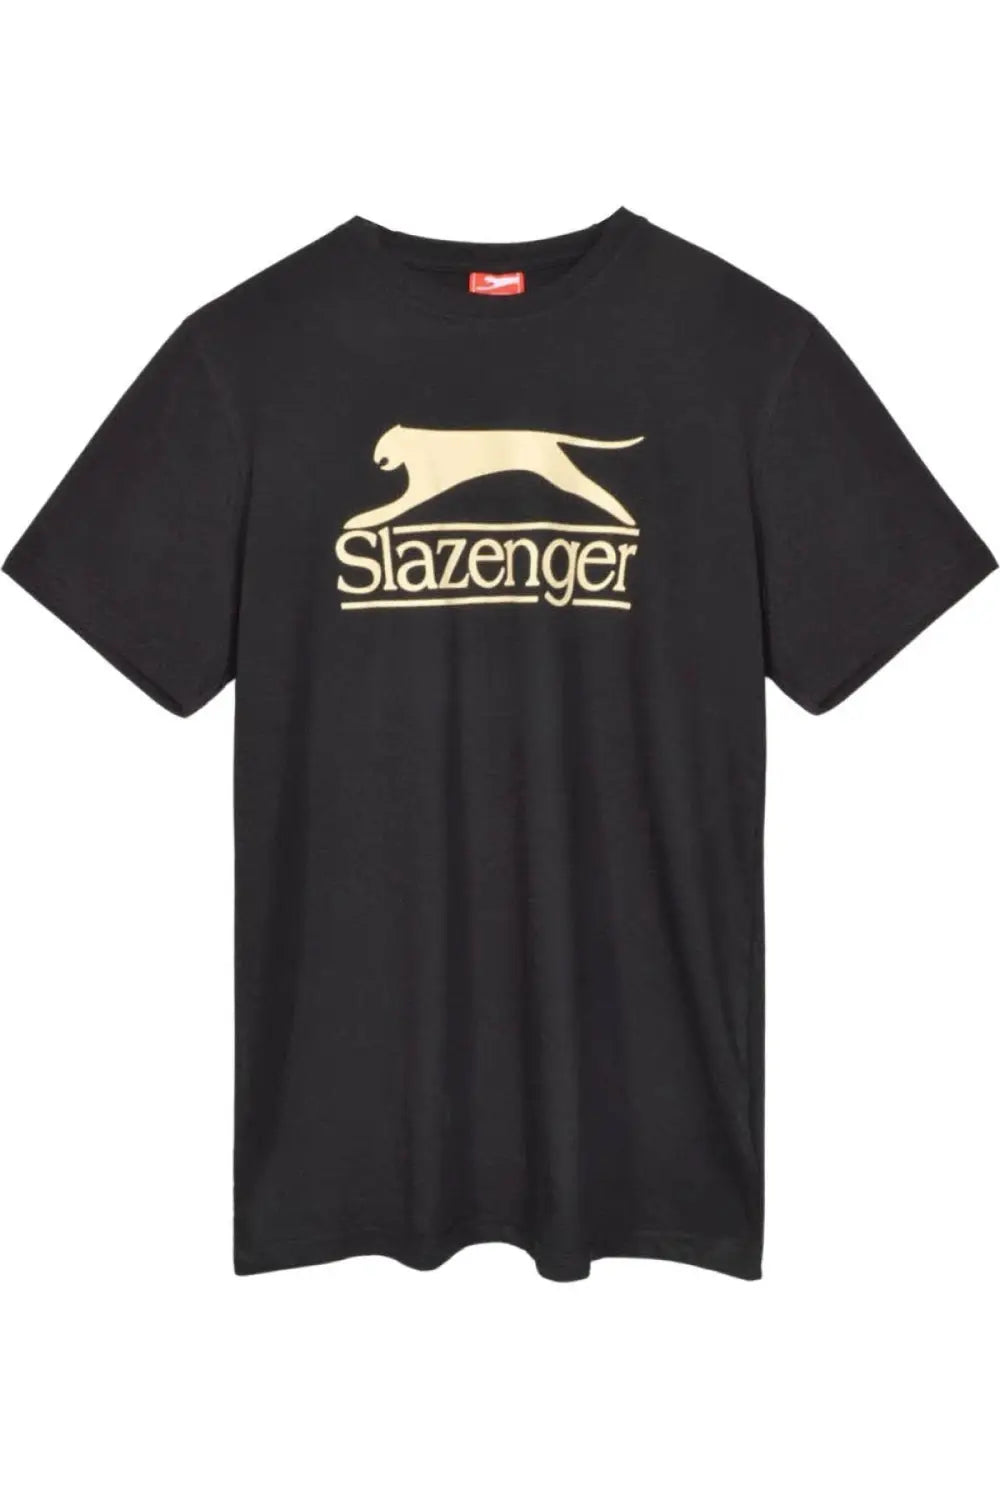 Slazenger Vintage Style Cat Logo T-Shirt